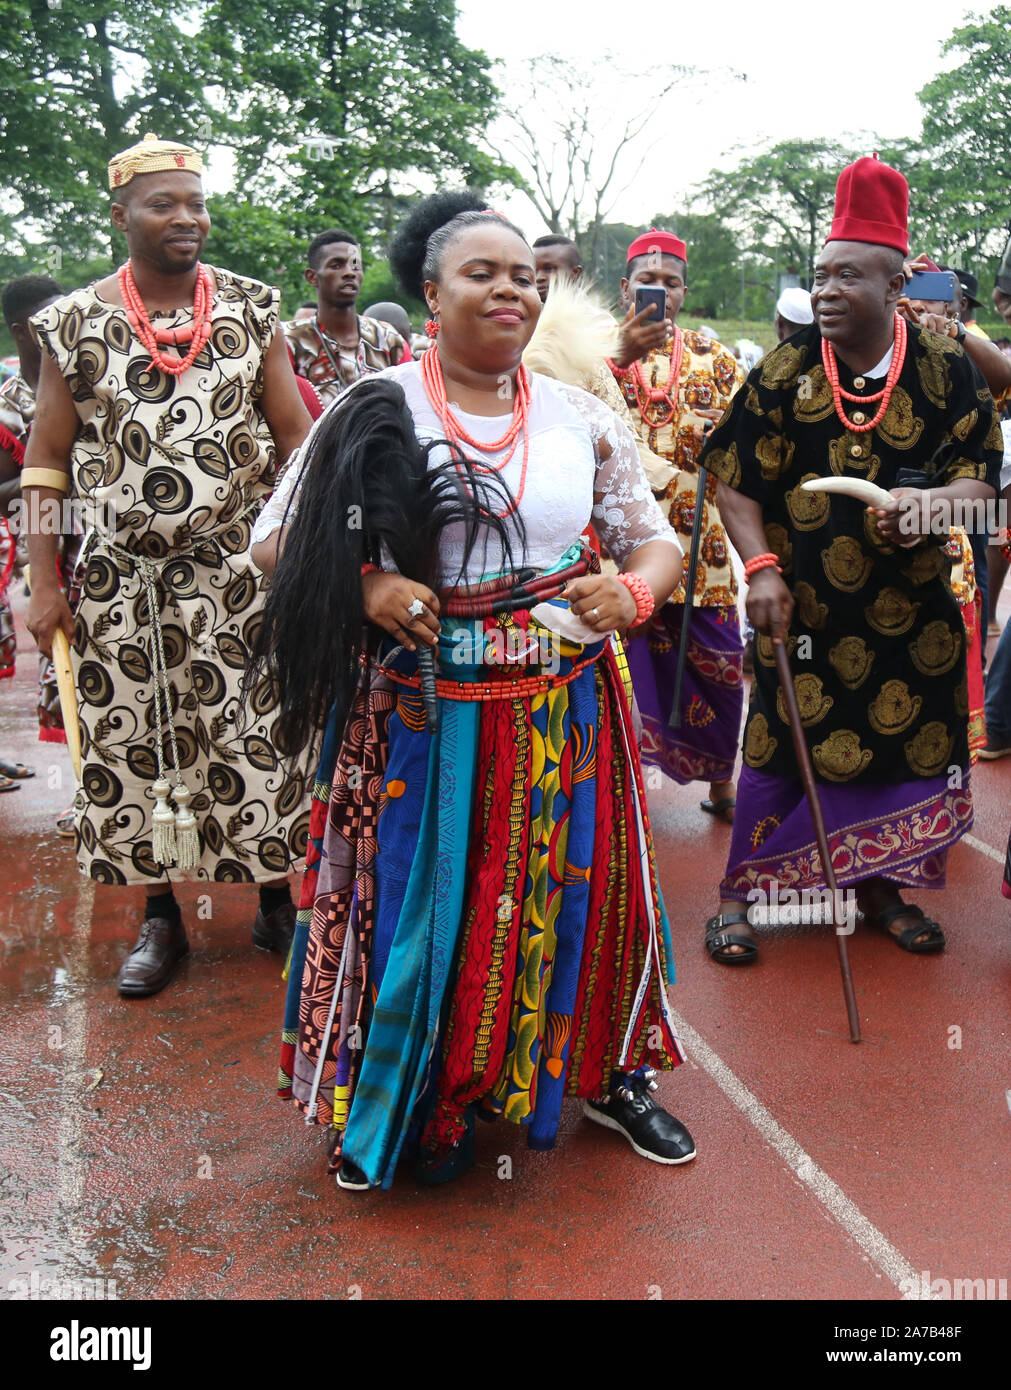 Les Igbo de la tribu nigériane dansent lors du Festival national des arts et de la culture (NAFEST) dans l'État d'Edo, au Nigeria. Banque D'Images